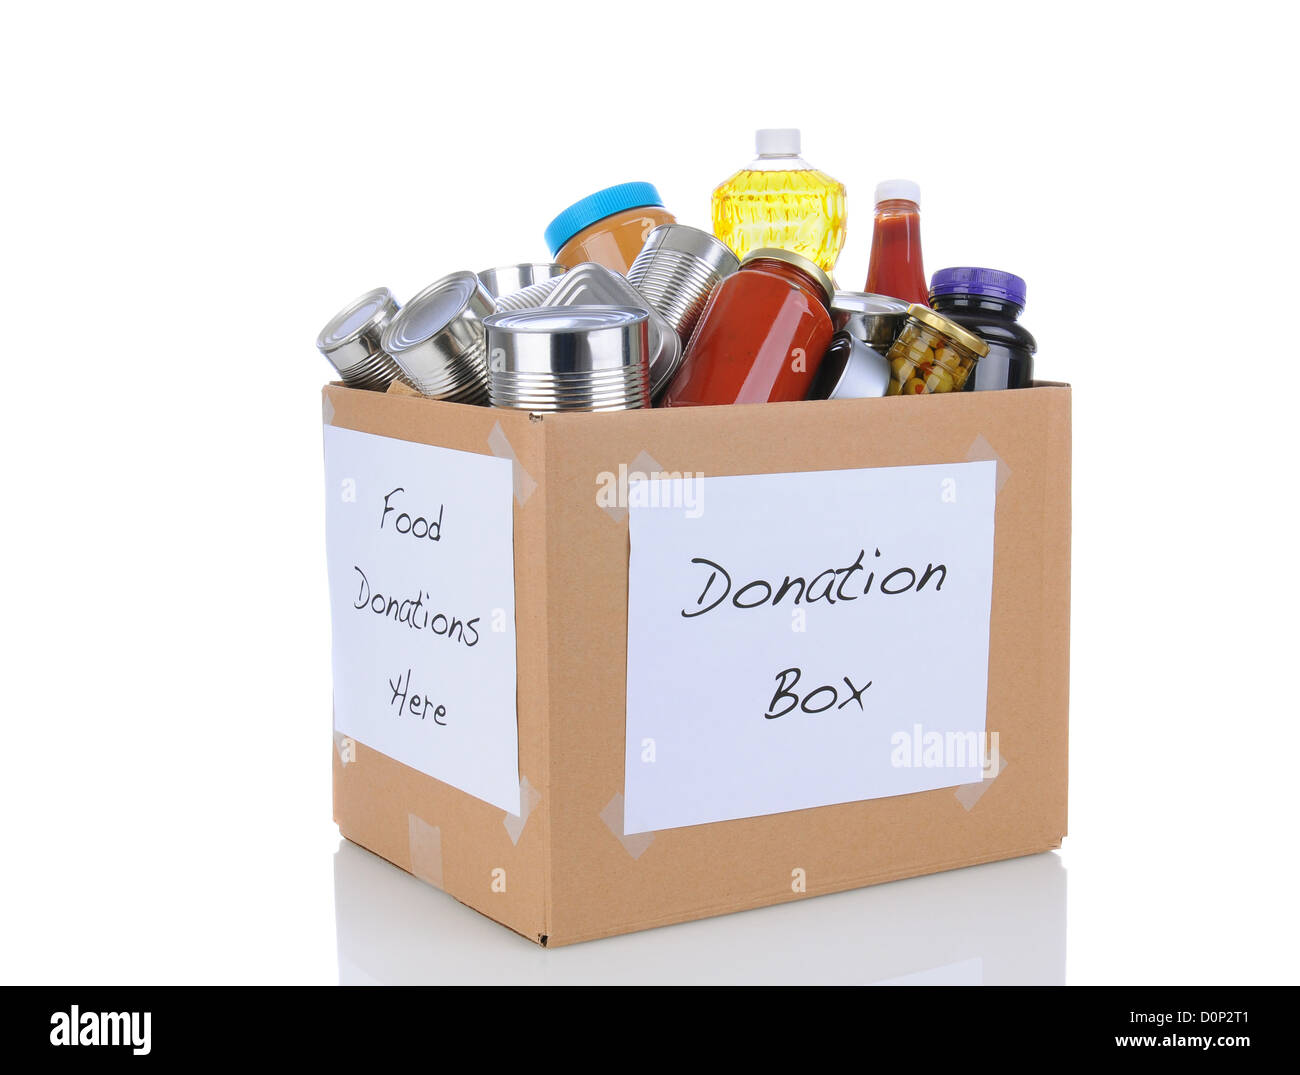 Une boîte pleine de conserves et de produits alimentaires emballés pour un organisme de bienfaisance de don de nourriture. Isolé sur blanc avec réflexion. Banque D'Images